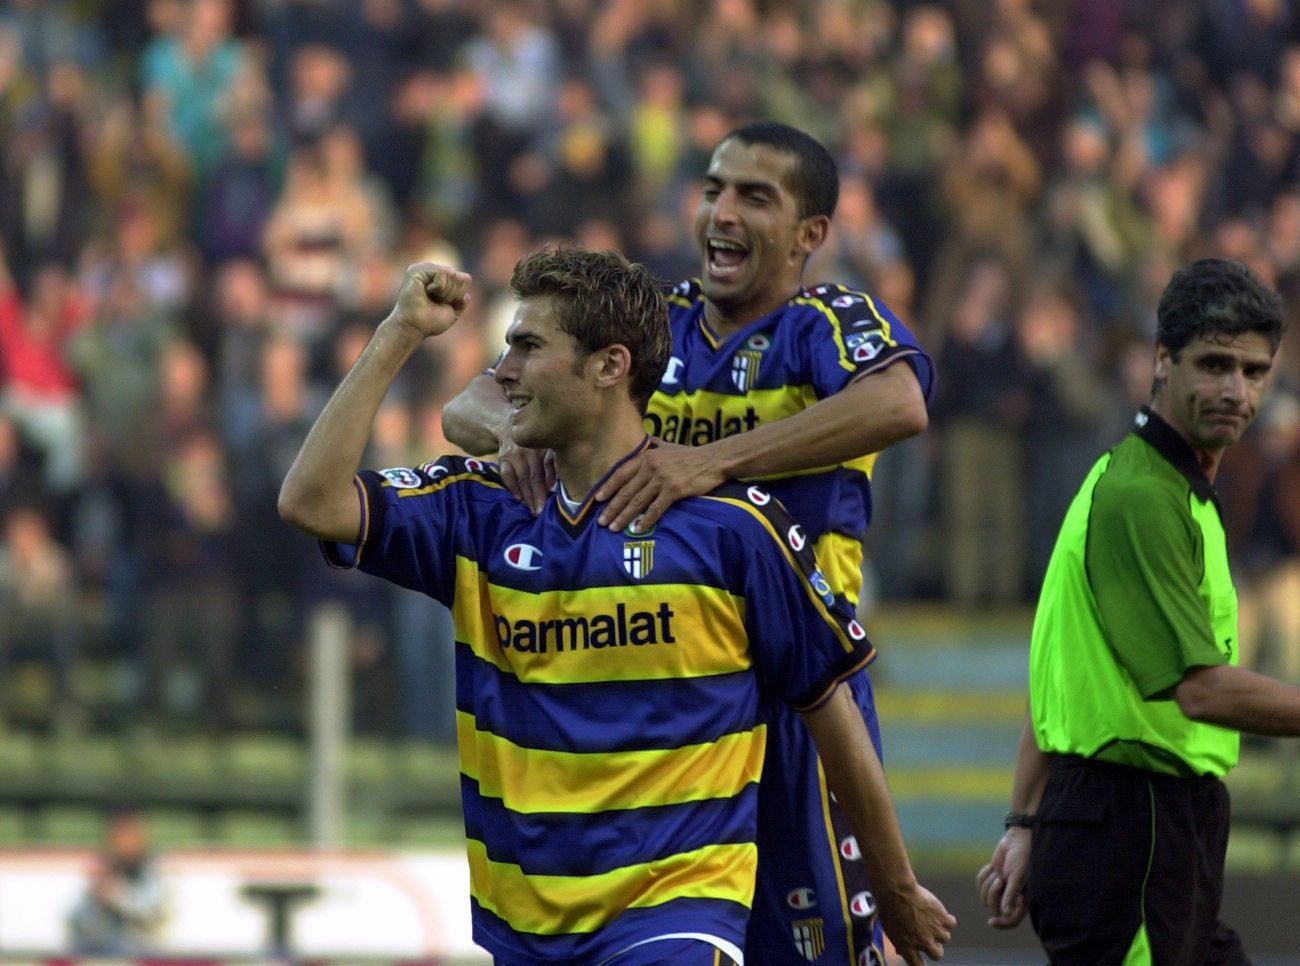 Hellas Verona and AC Parma